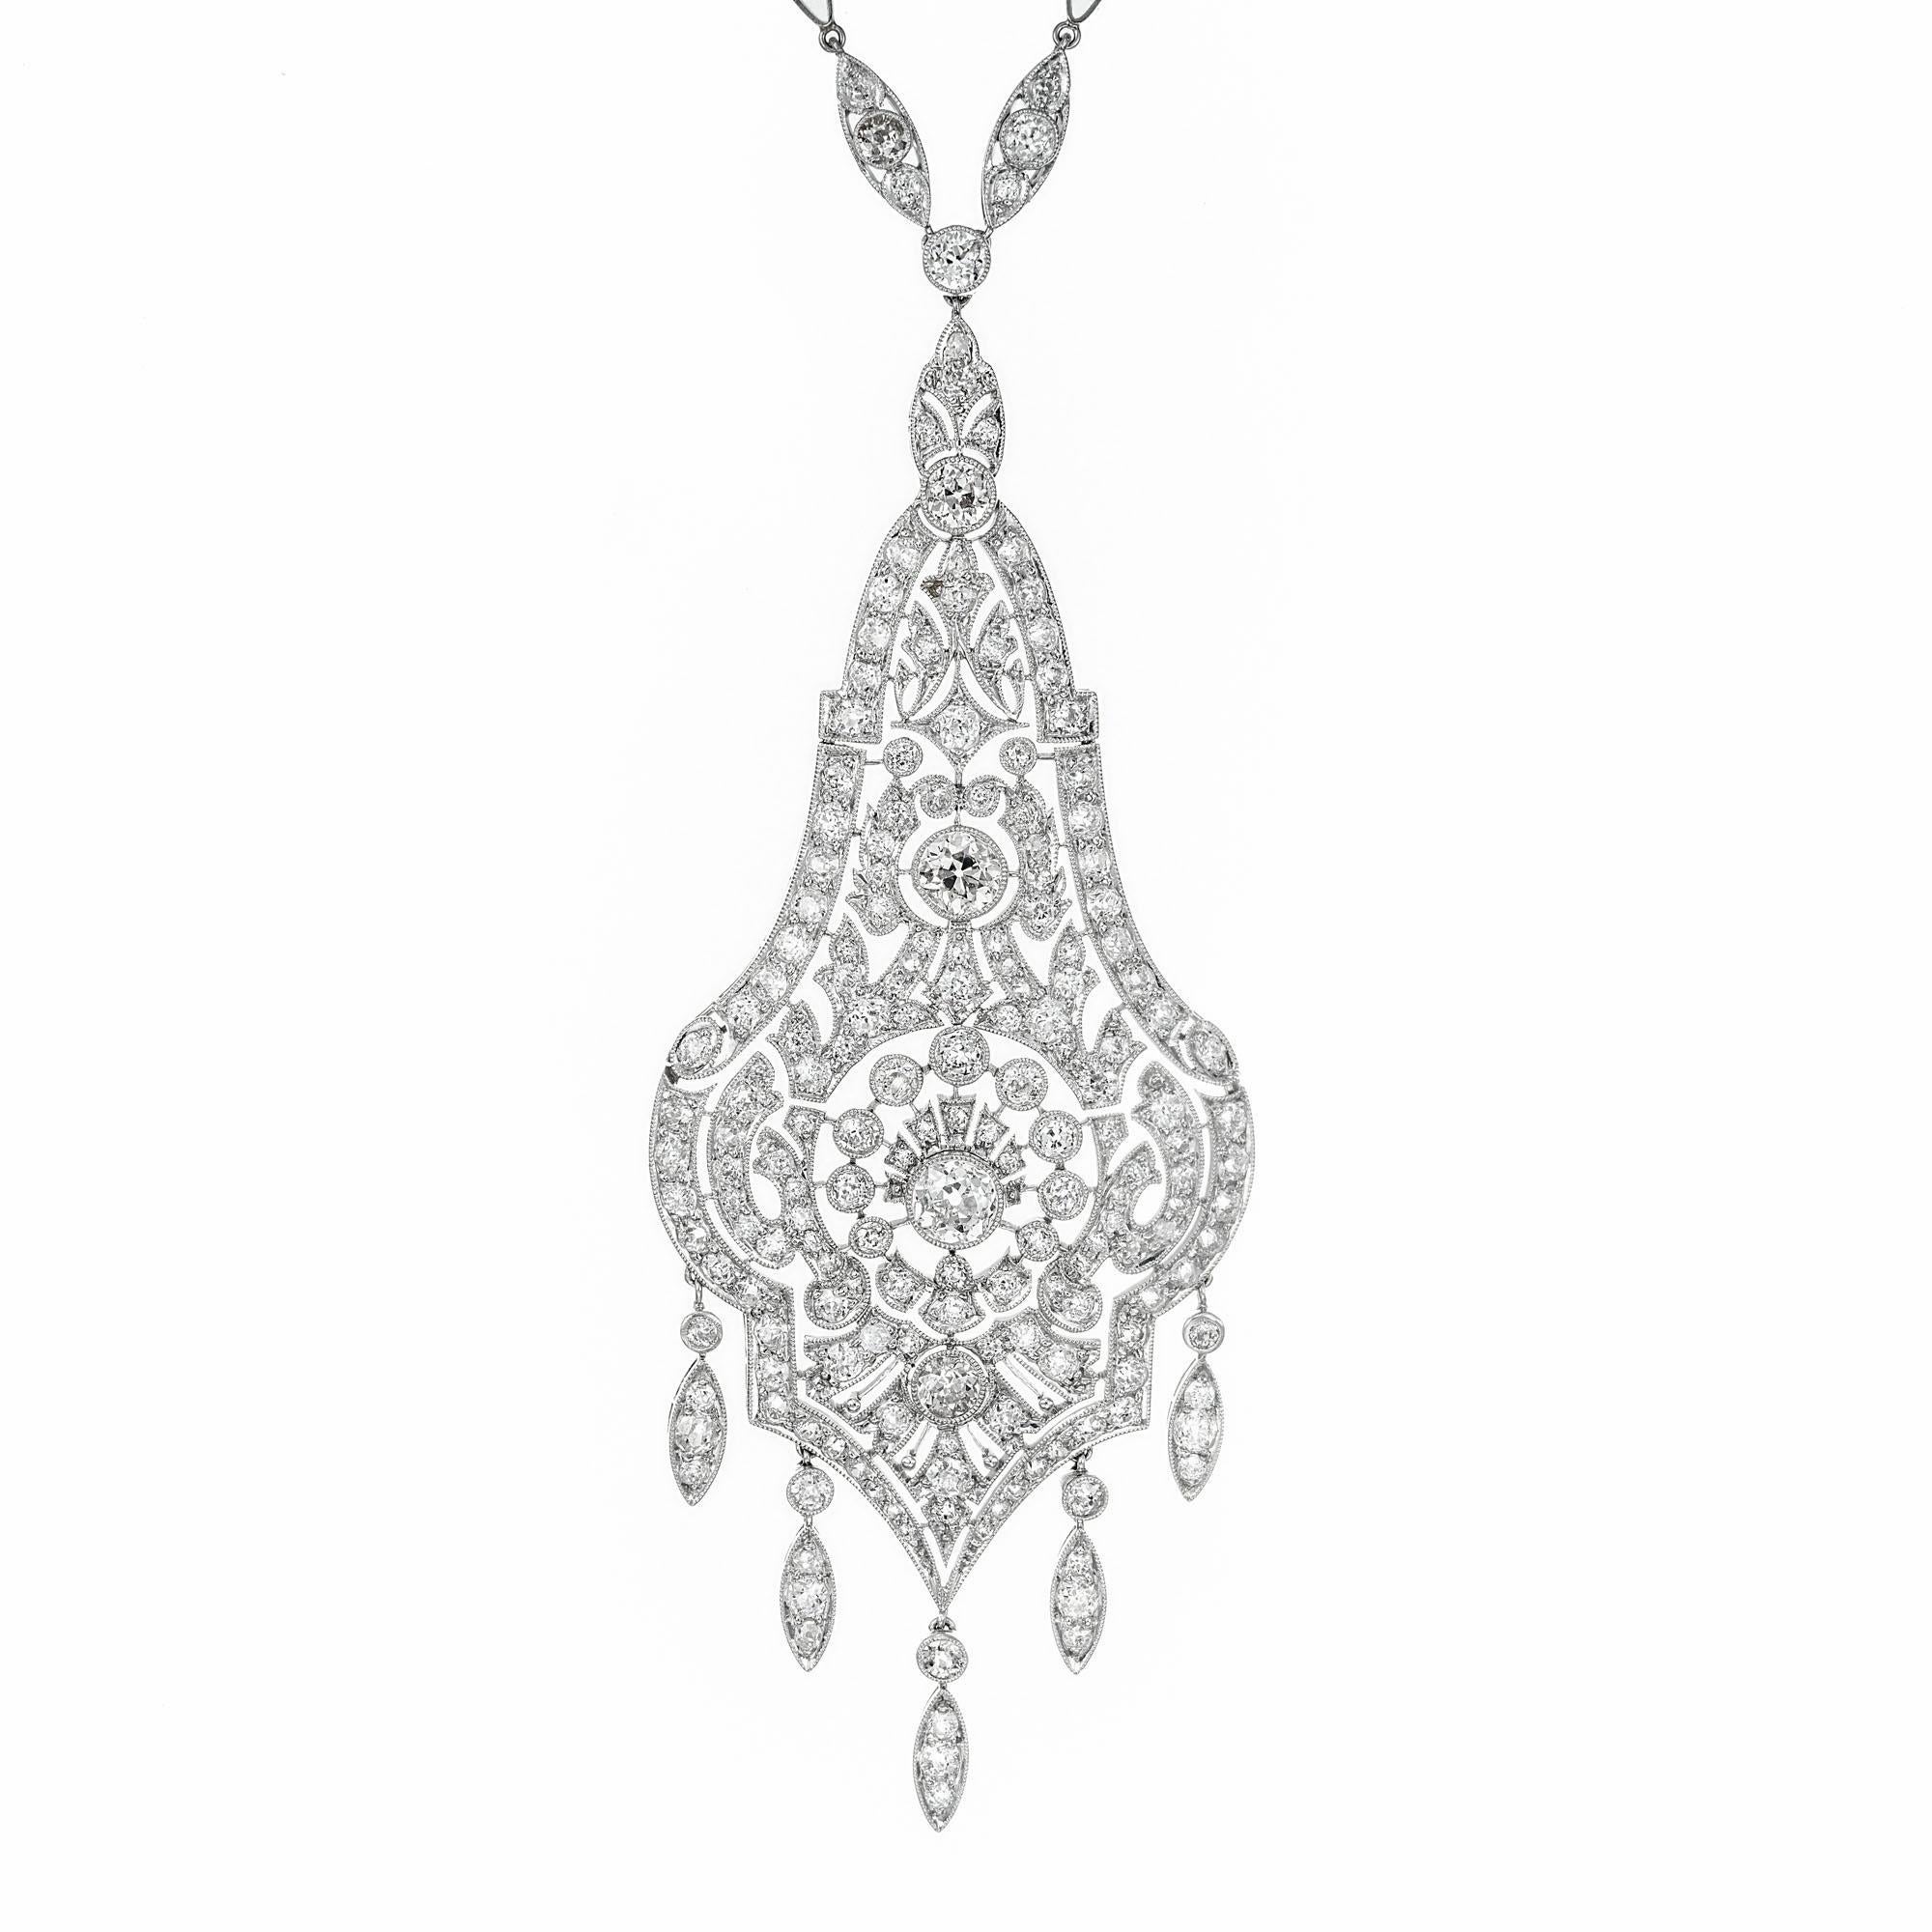 Collier pendentif en diamants de la Belle Époque édouardienne. Vers 1910. Pendentif à charnière en trois sections, rempli de diamants, avec 5 pendentifs à la base, serti en platine. Le pendentif est fait à la main avec une chaîne à maillons en